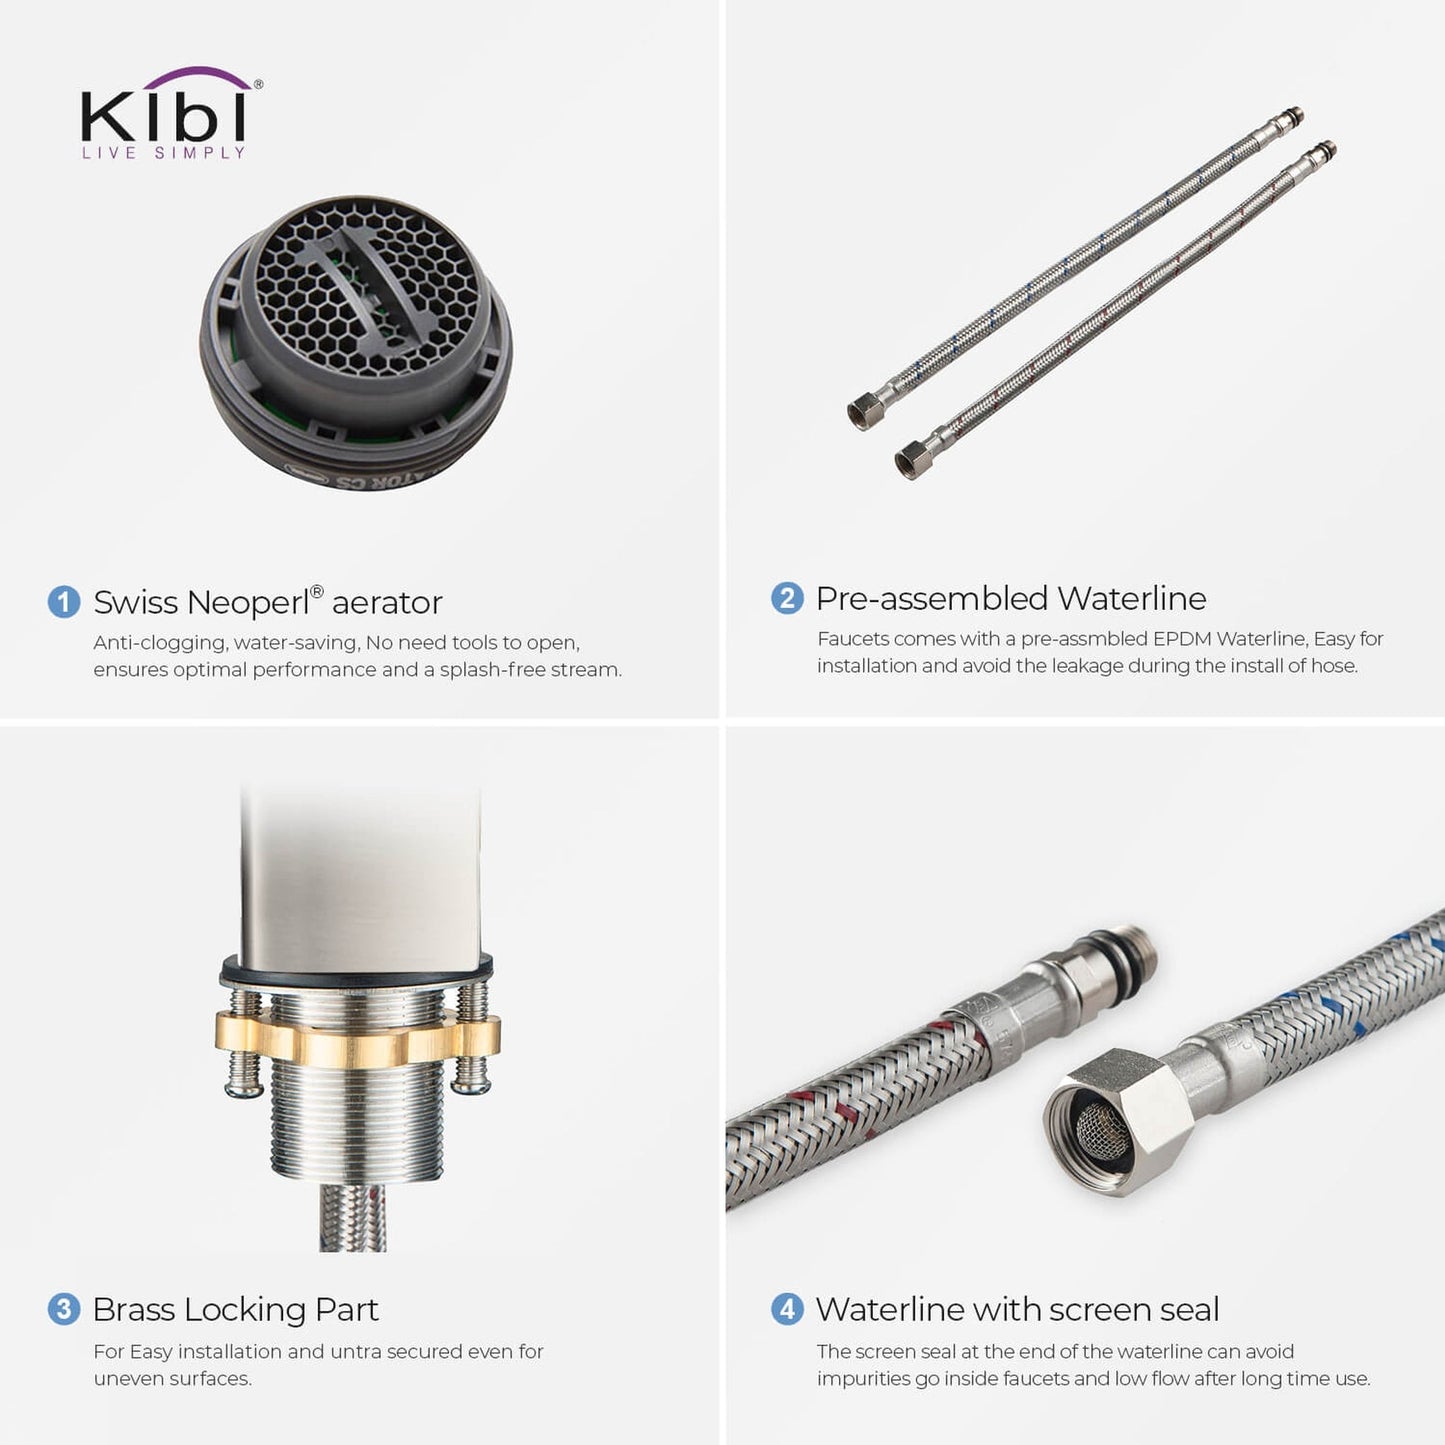 KIBI Infinity Single Handle Brushed Nickel Solid Brass Bathroom Vanity Vessel Sink Faucet